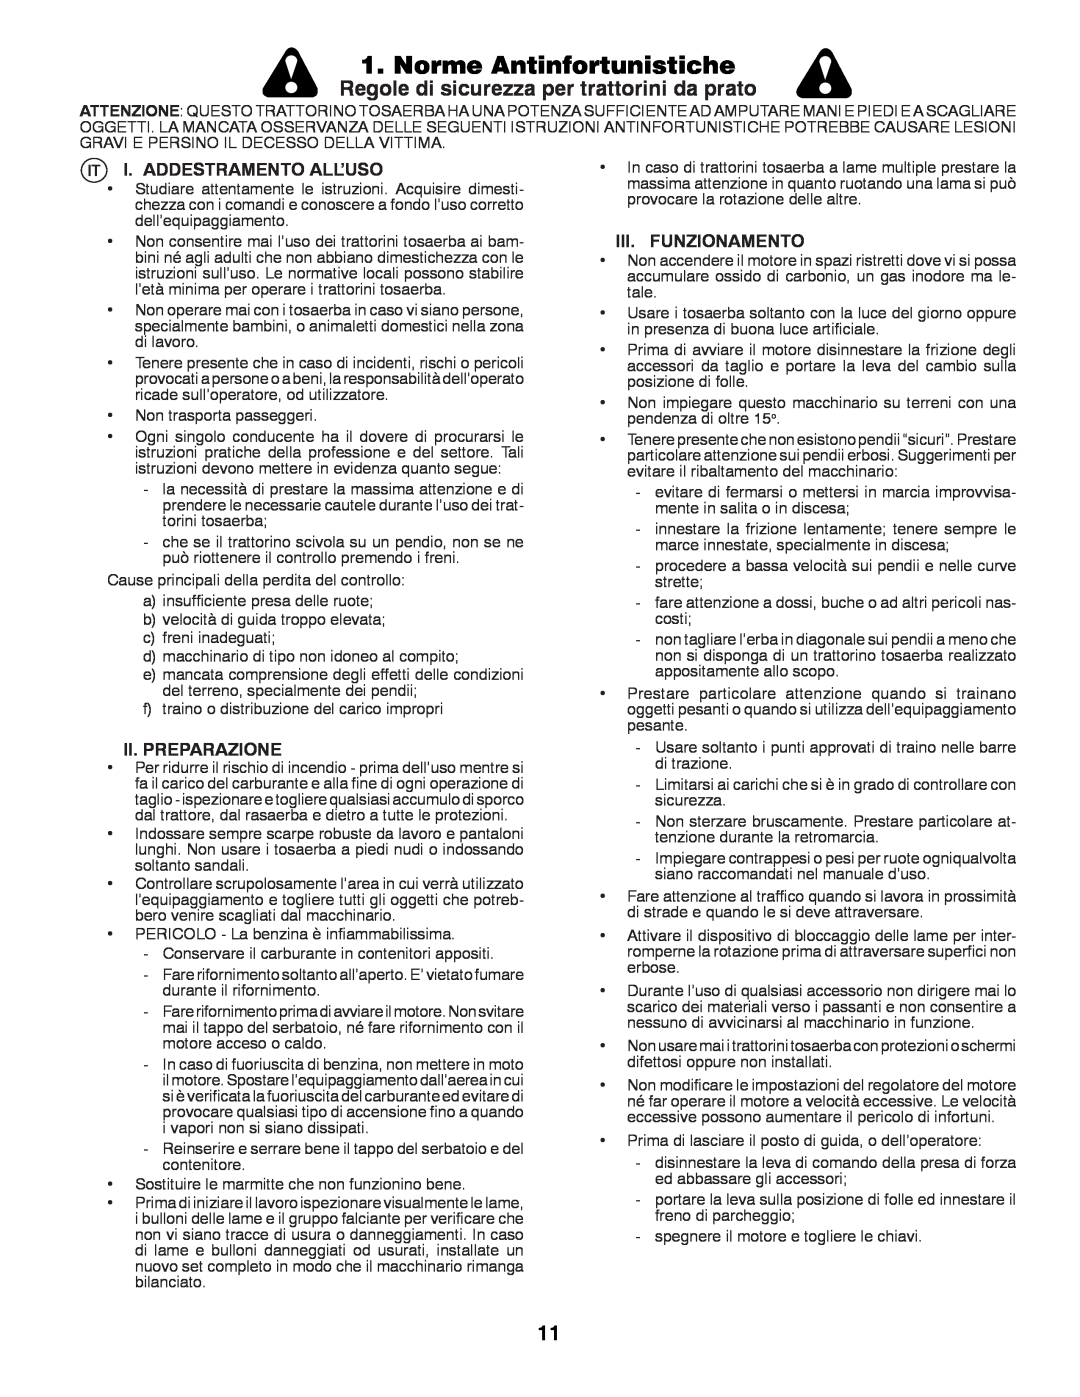 McCulloch 532 43 42-91 Rev. 1 instruction manual Norme Antinfortunistiche, Regole di sicurezza per trattorini da prato 